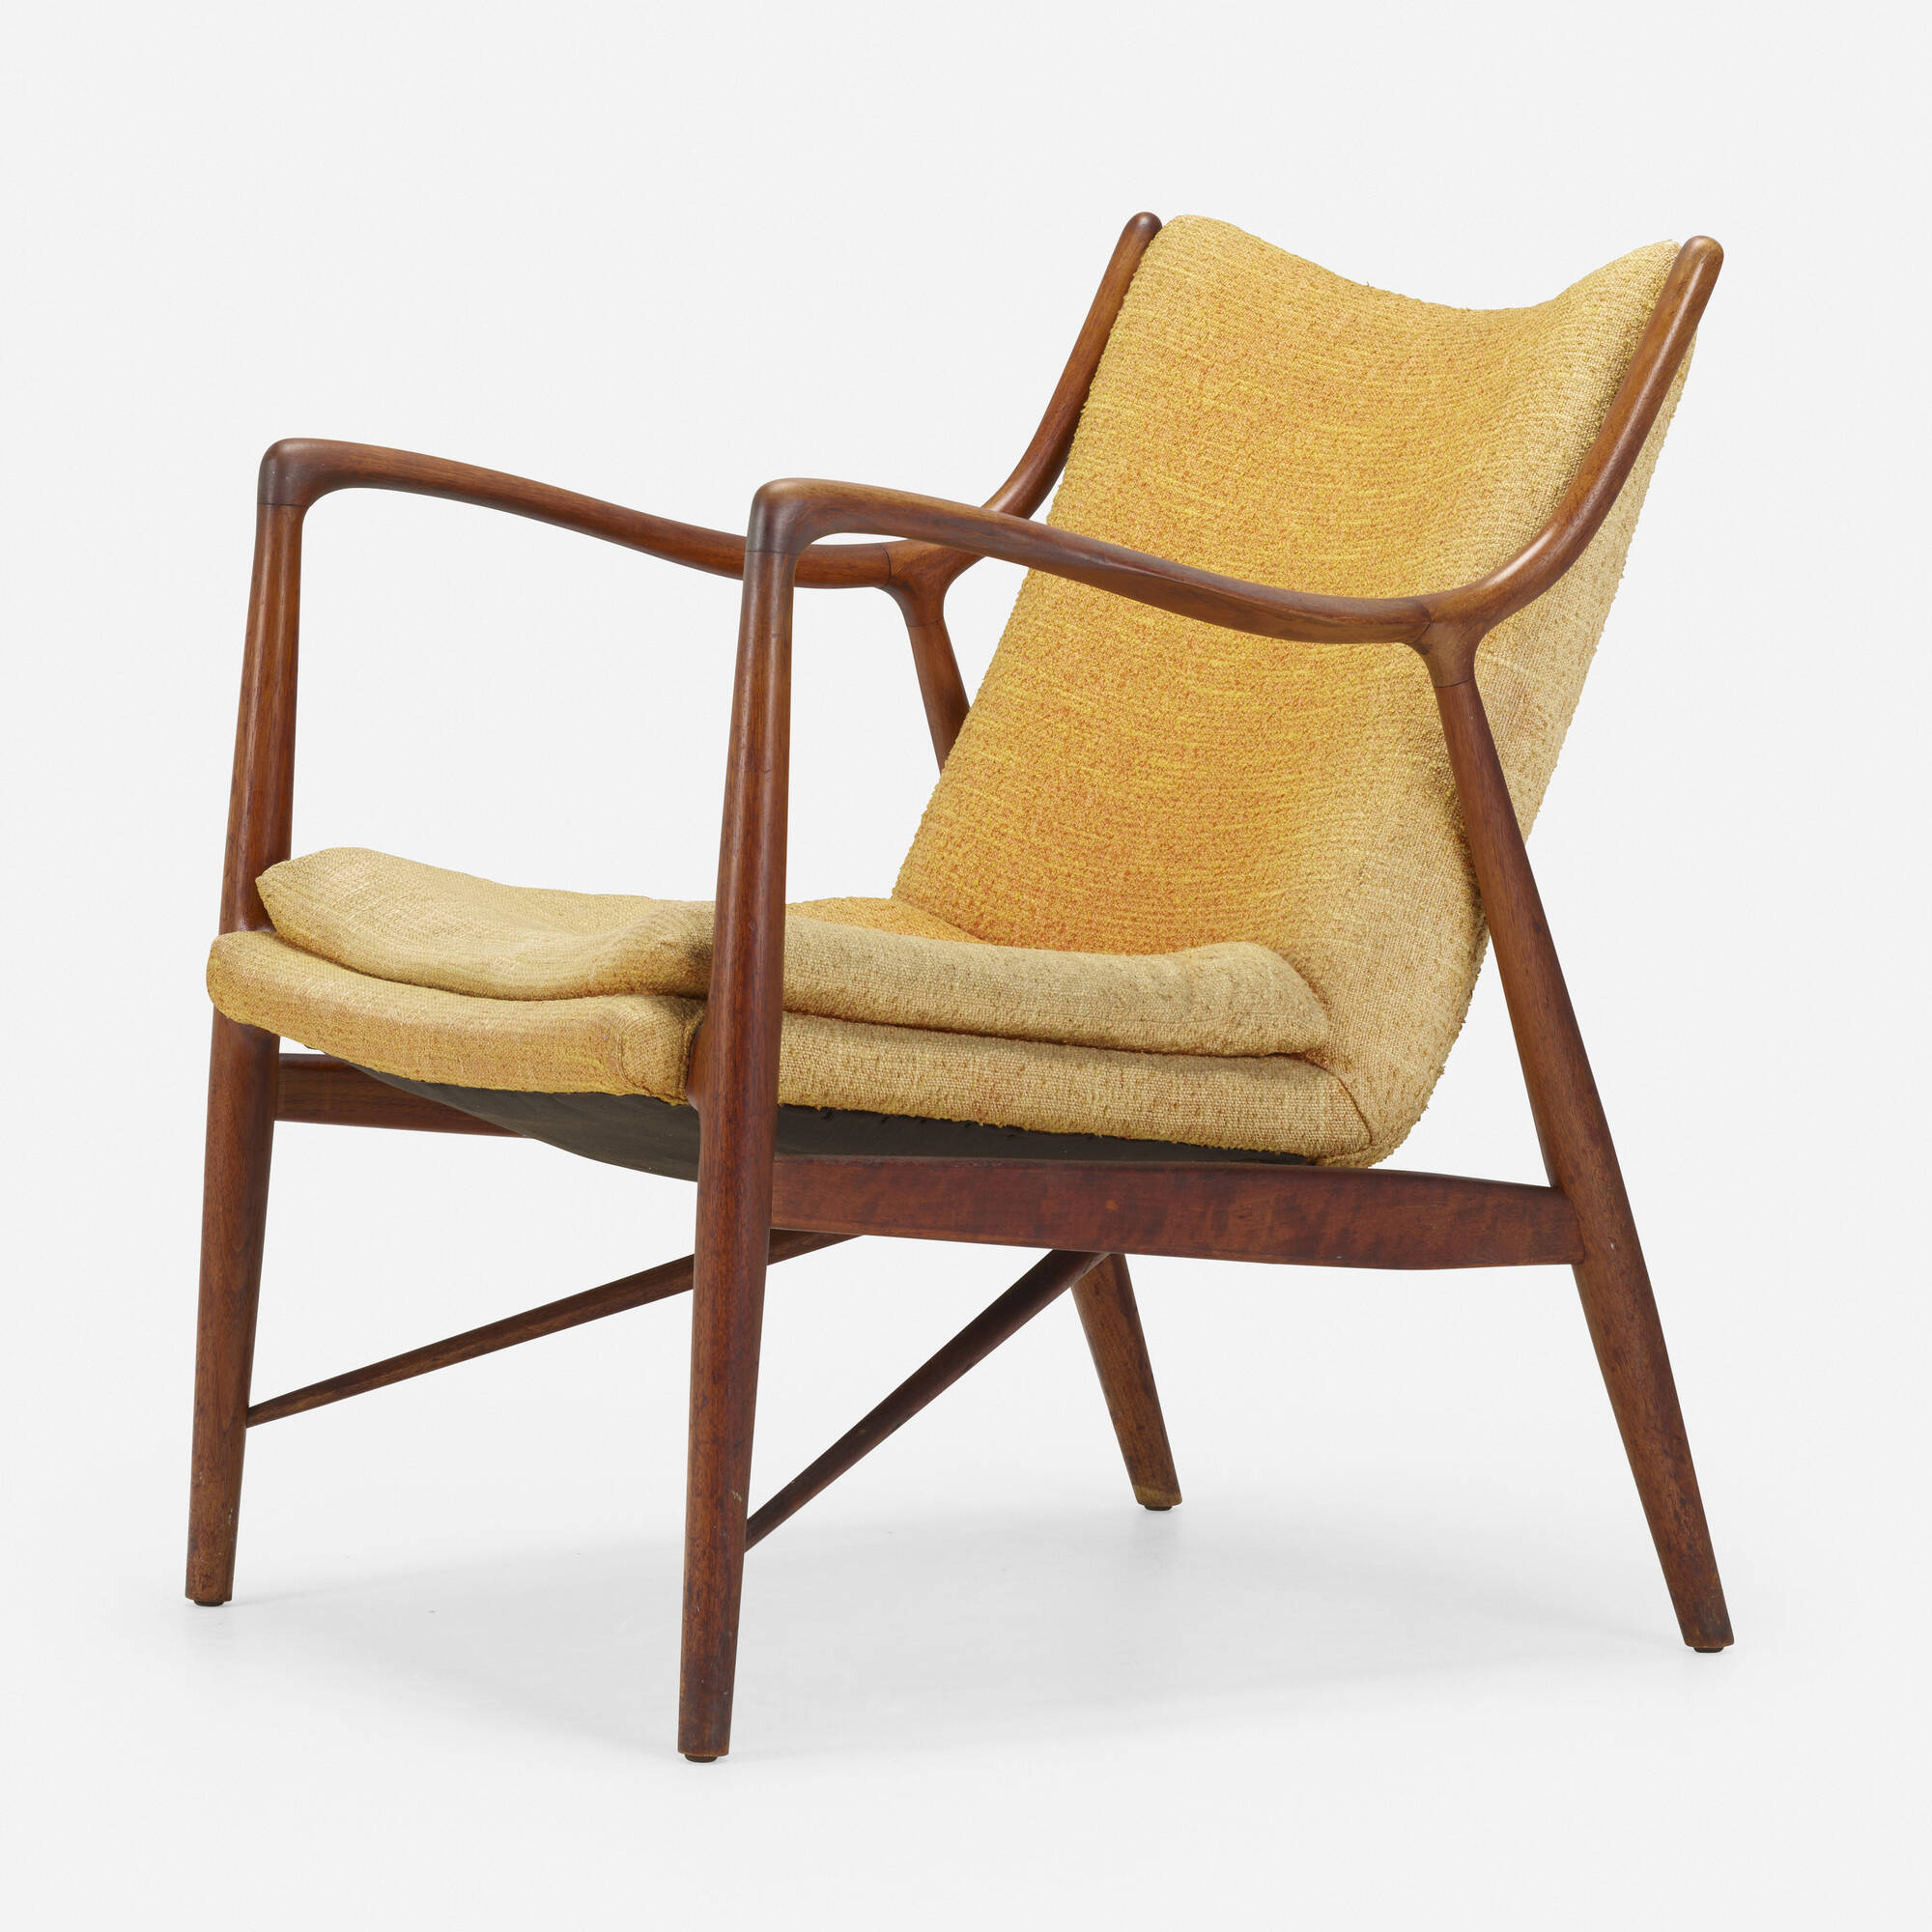 104: FINN JUHL, Lounge chair, model NV-45 < Living Contemporary, 6 